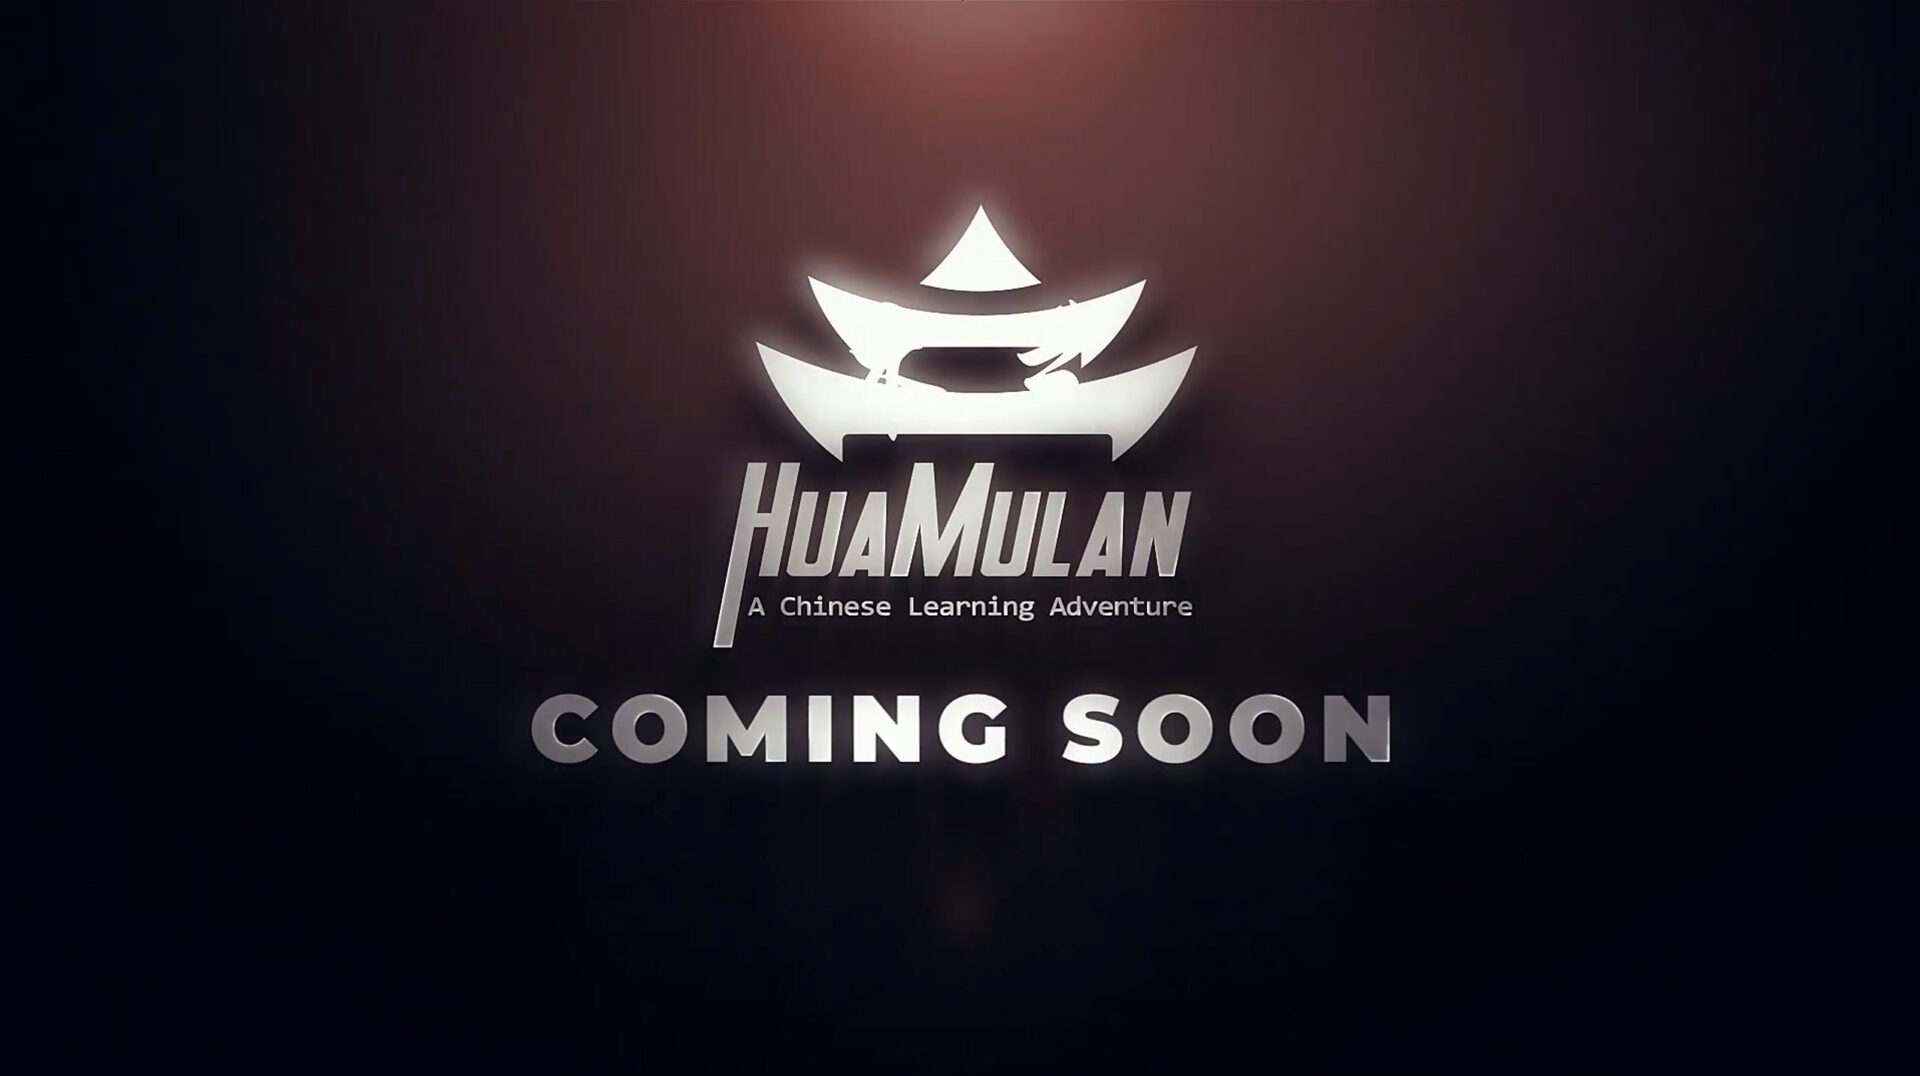 Hua Mulan Game News Indie Game Fans News